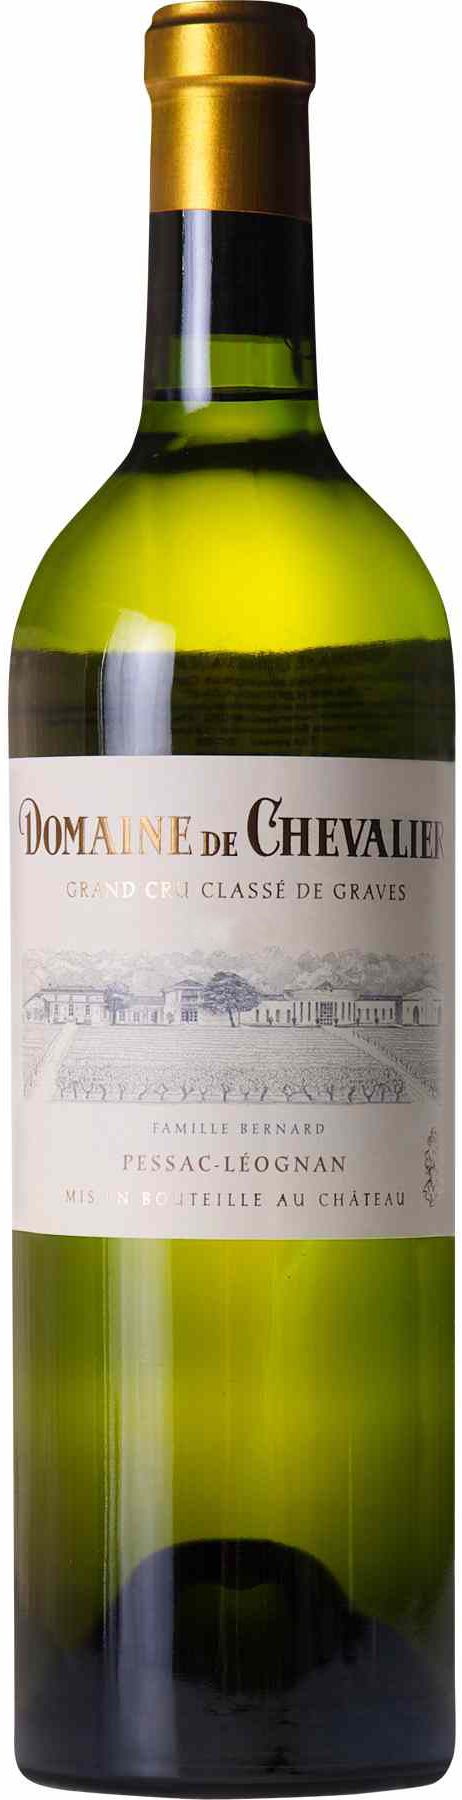 Domaine De Chevalier, Blanc, 2009